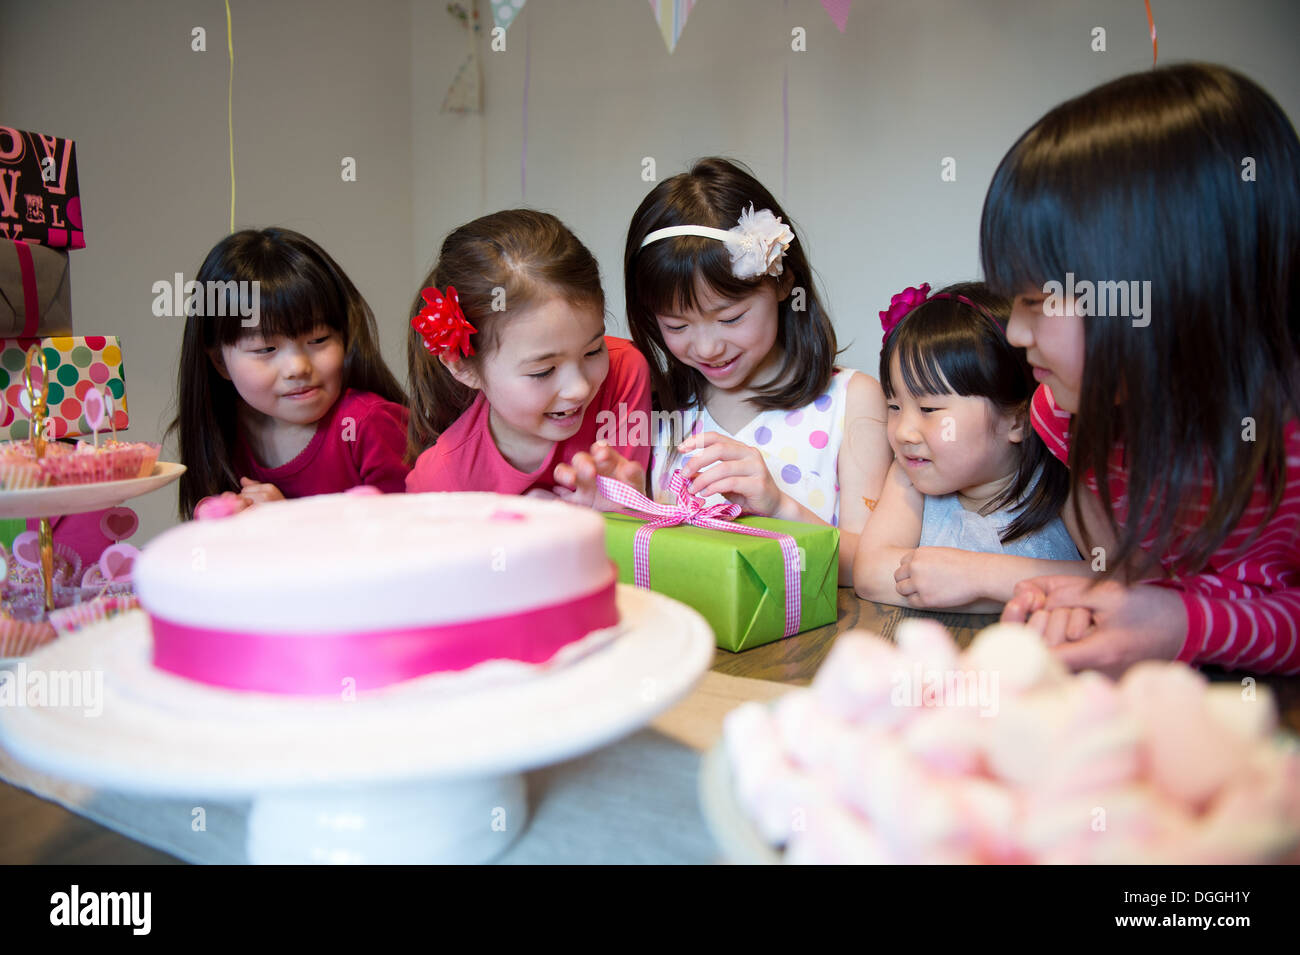 Mädchen Auspacken Geburtstagsgeschenk auf party Stockfoto